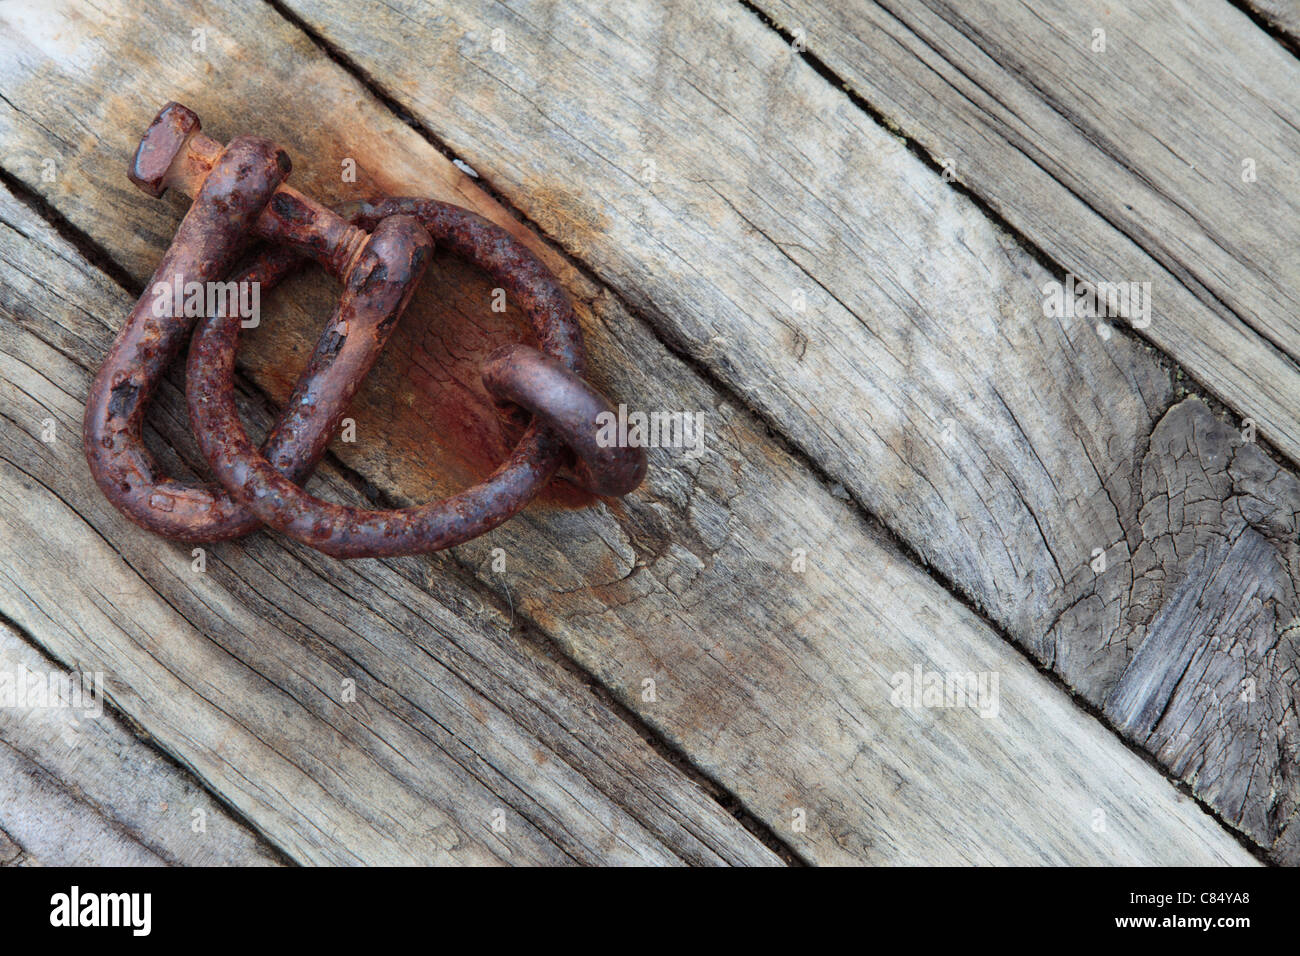 A rusty iron shackle along the dock at Akaroa, New Zealand Stock Photo